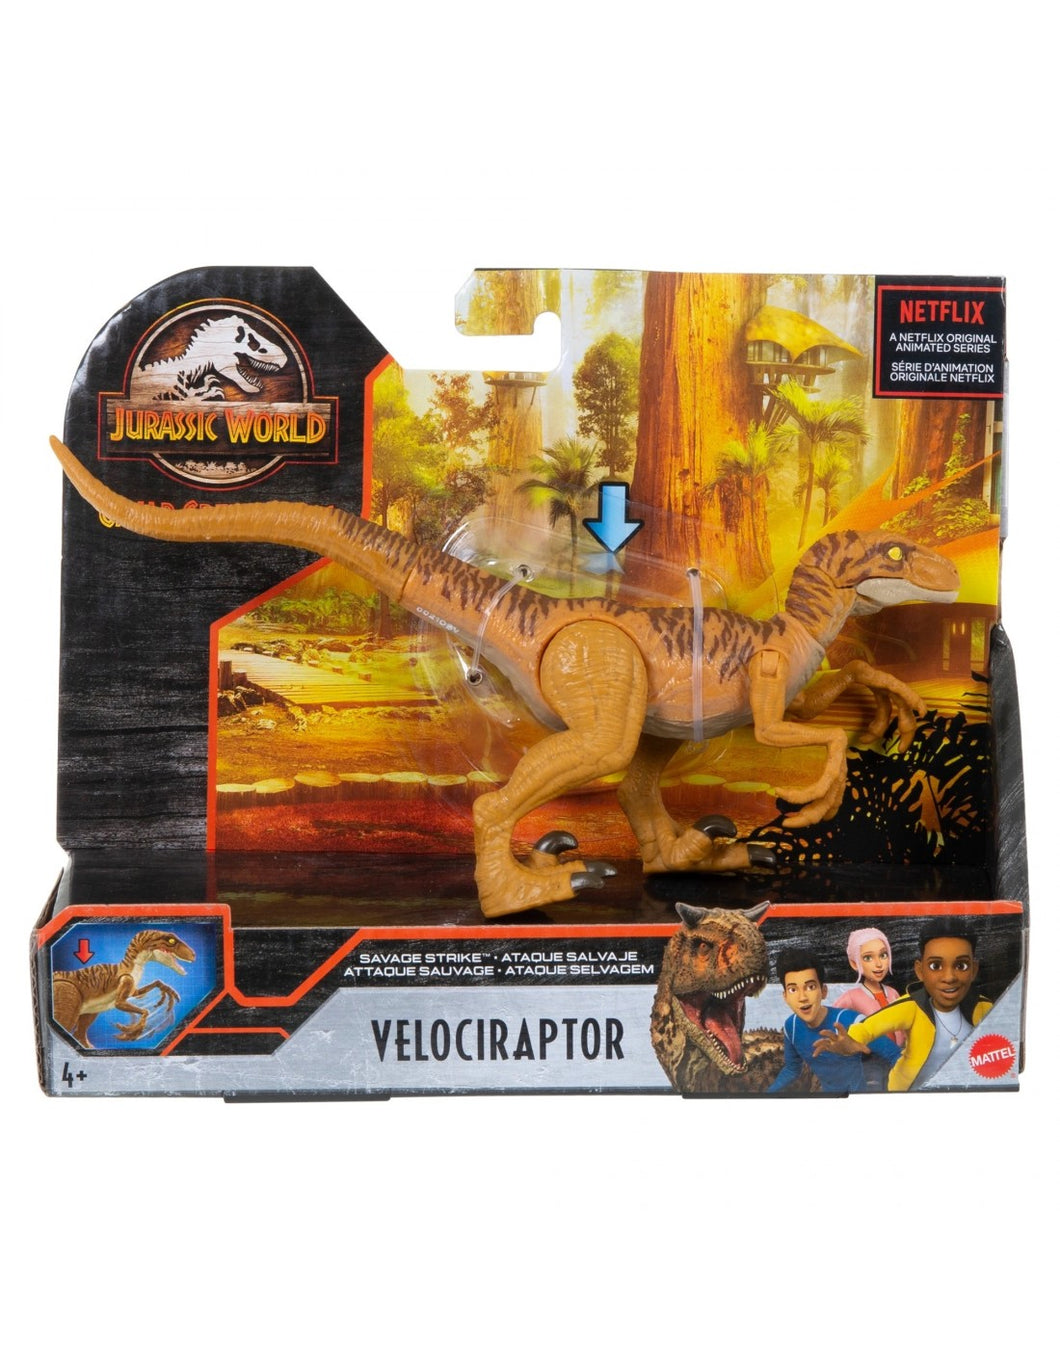 Jurassic World Savage Strike Velociraptor Dinosaur